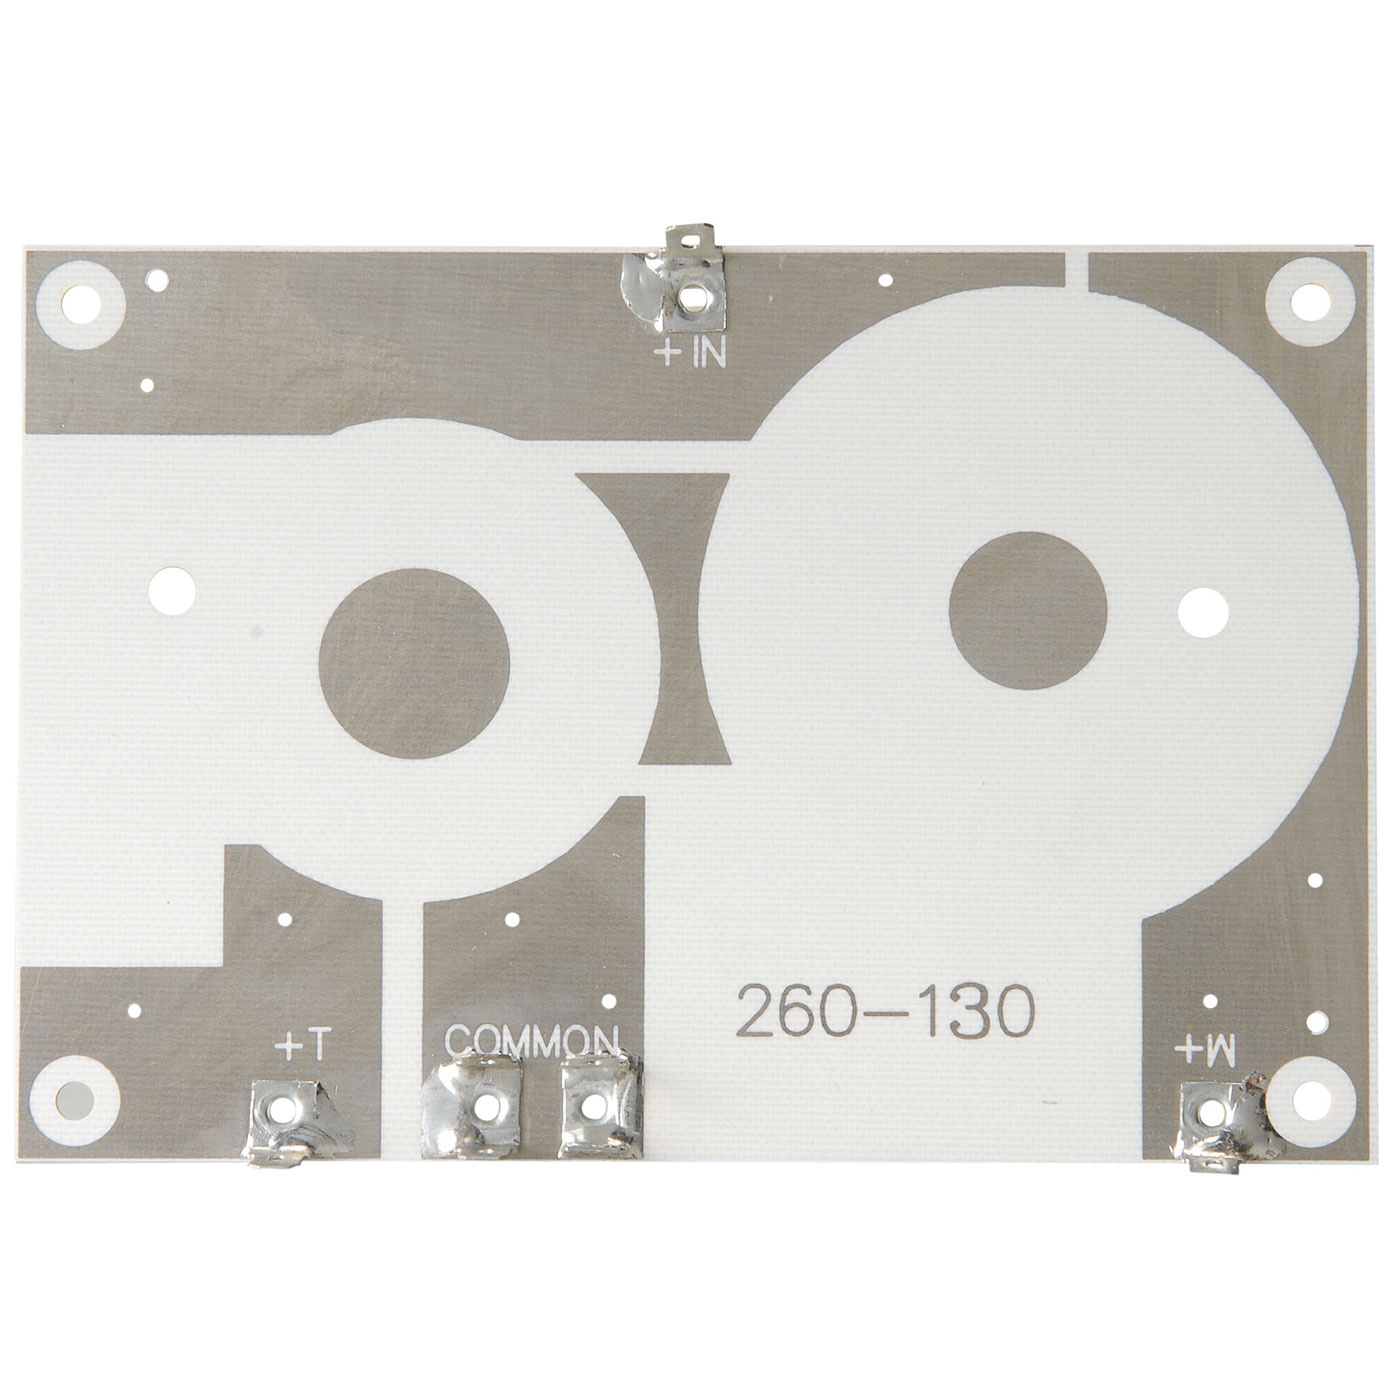 Placi PCB - Placa PC crossover 260-130| 9.53 x 13.97 cm, audioclub.ro